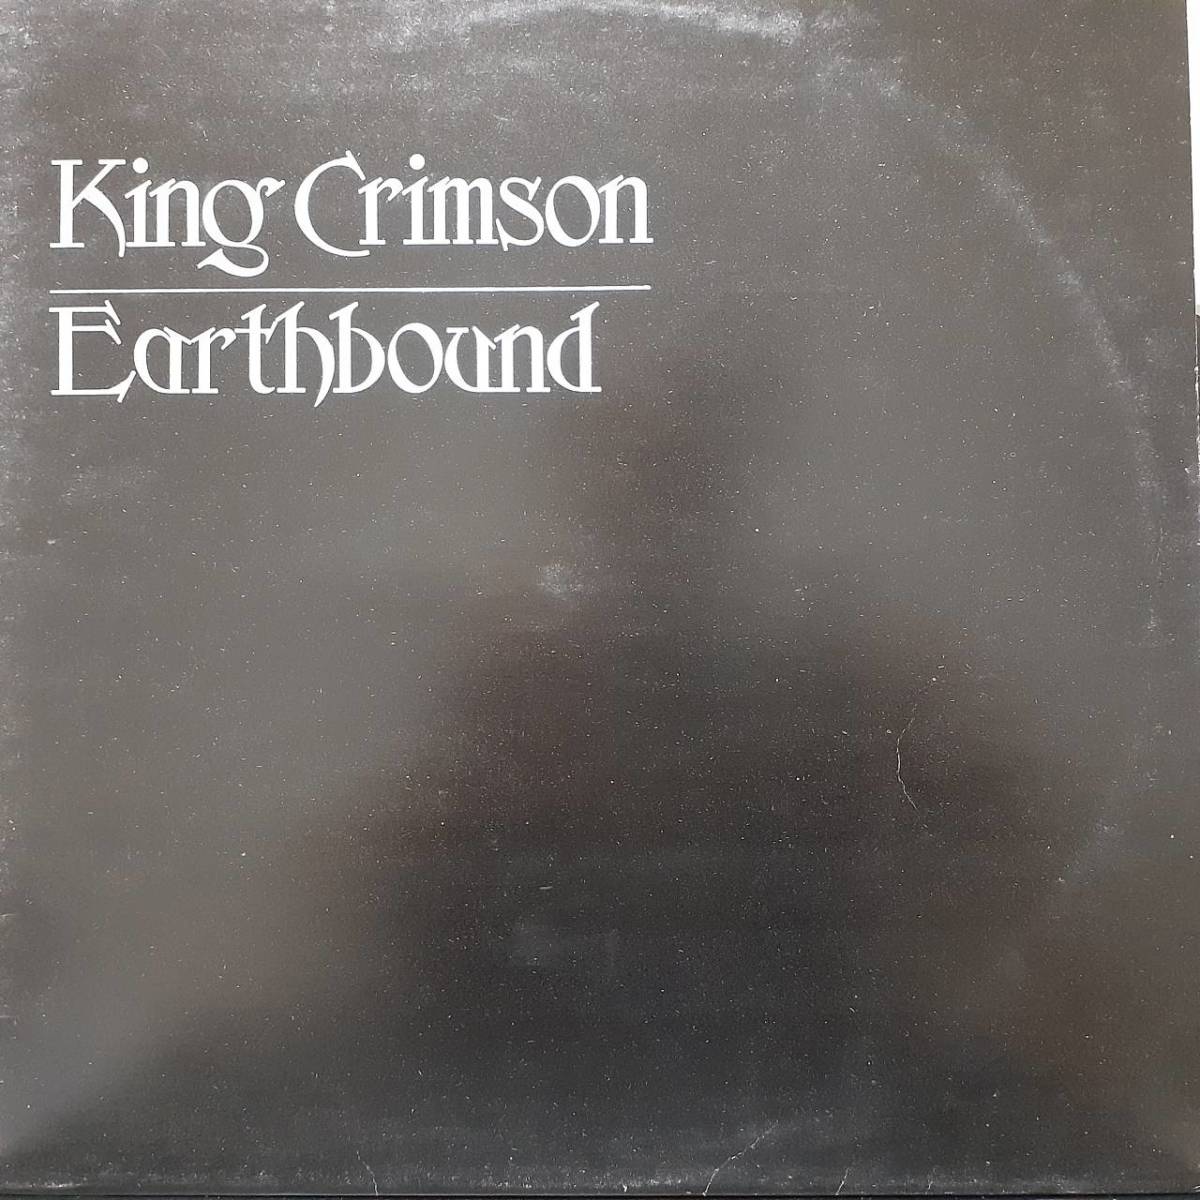 英ISLANDオリジLP！ビッグアイ(I)・ラベル！マト枝1Uと2U！King Crimson / Earthbound 1972年 HELP6 キングクリムゾン 21世紀の精神異常者_画像1